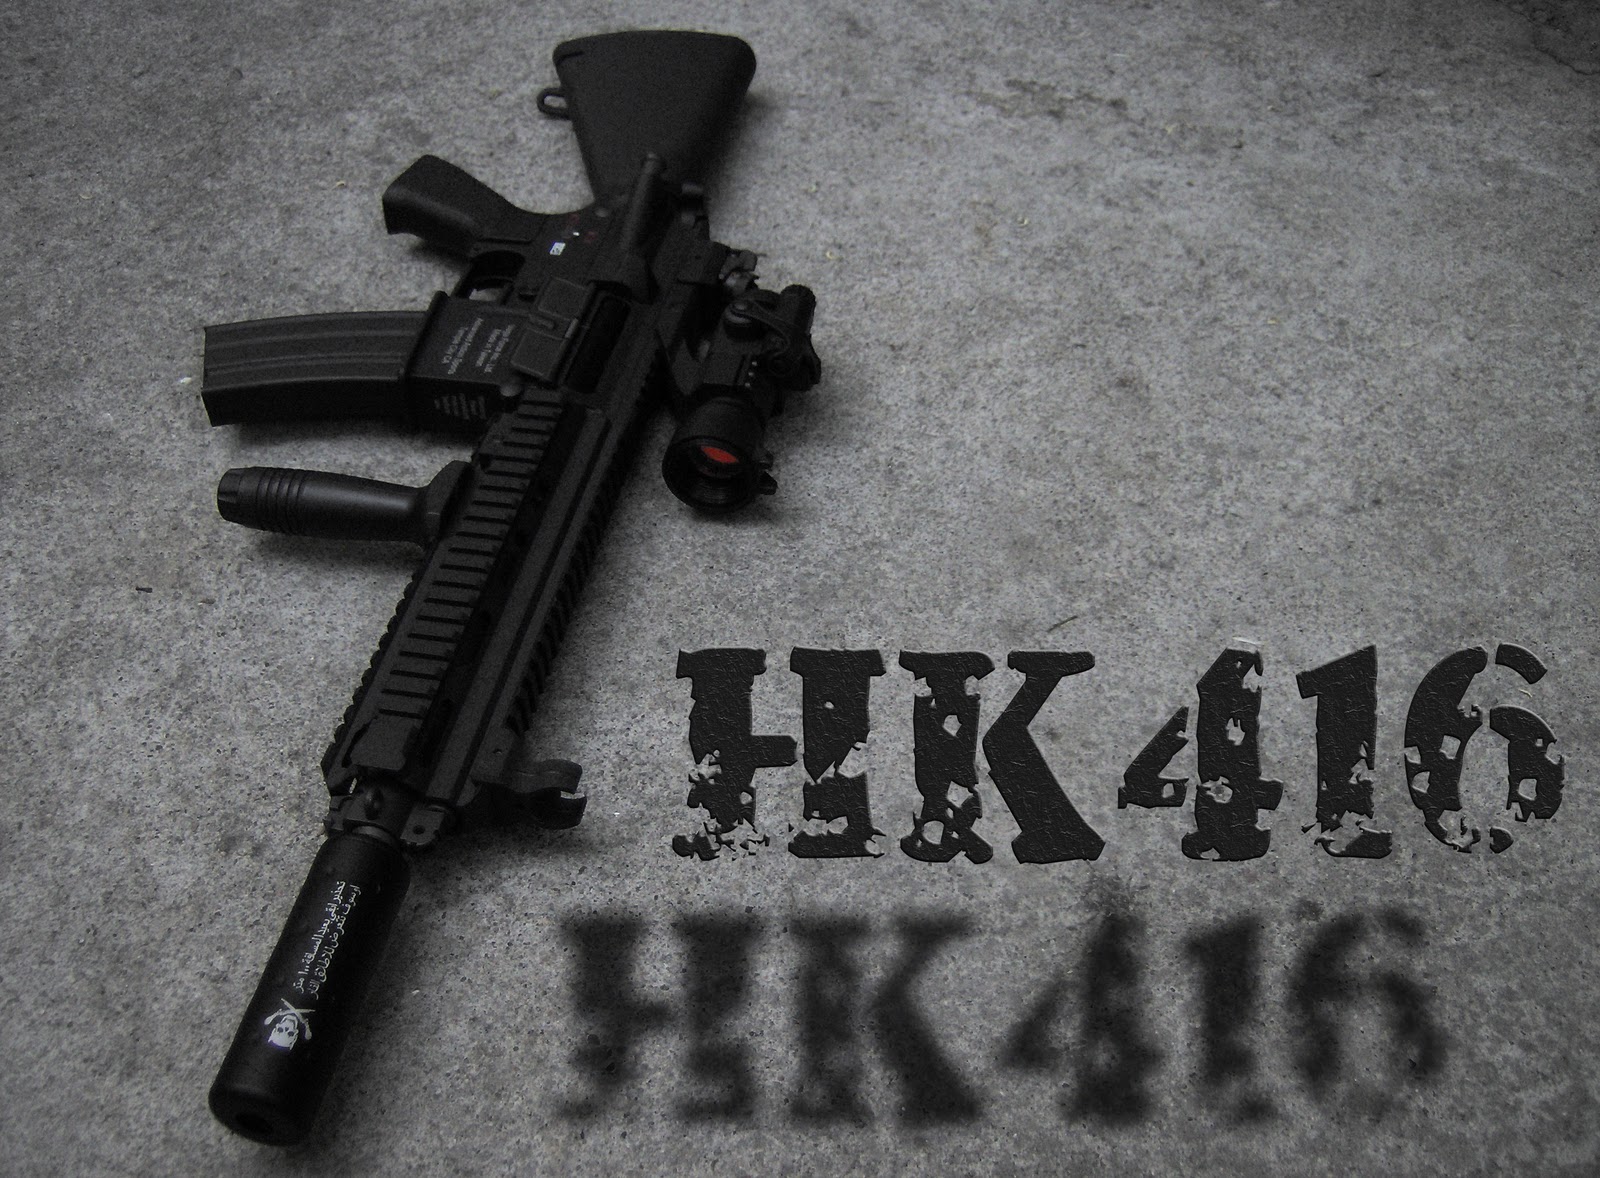 Krintanx=: HK416 modular assault rifle / carbine / upper receiver ...